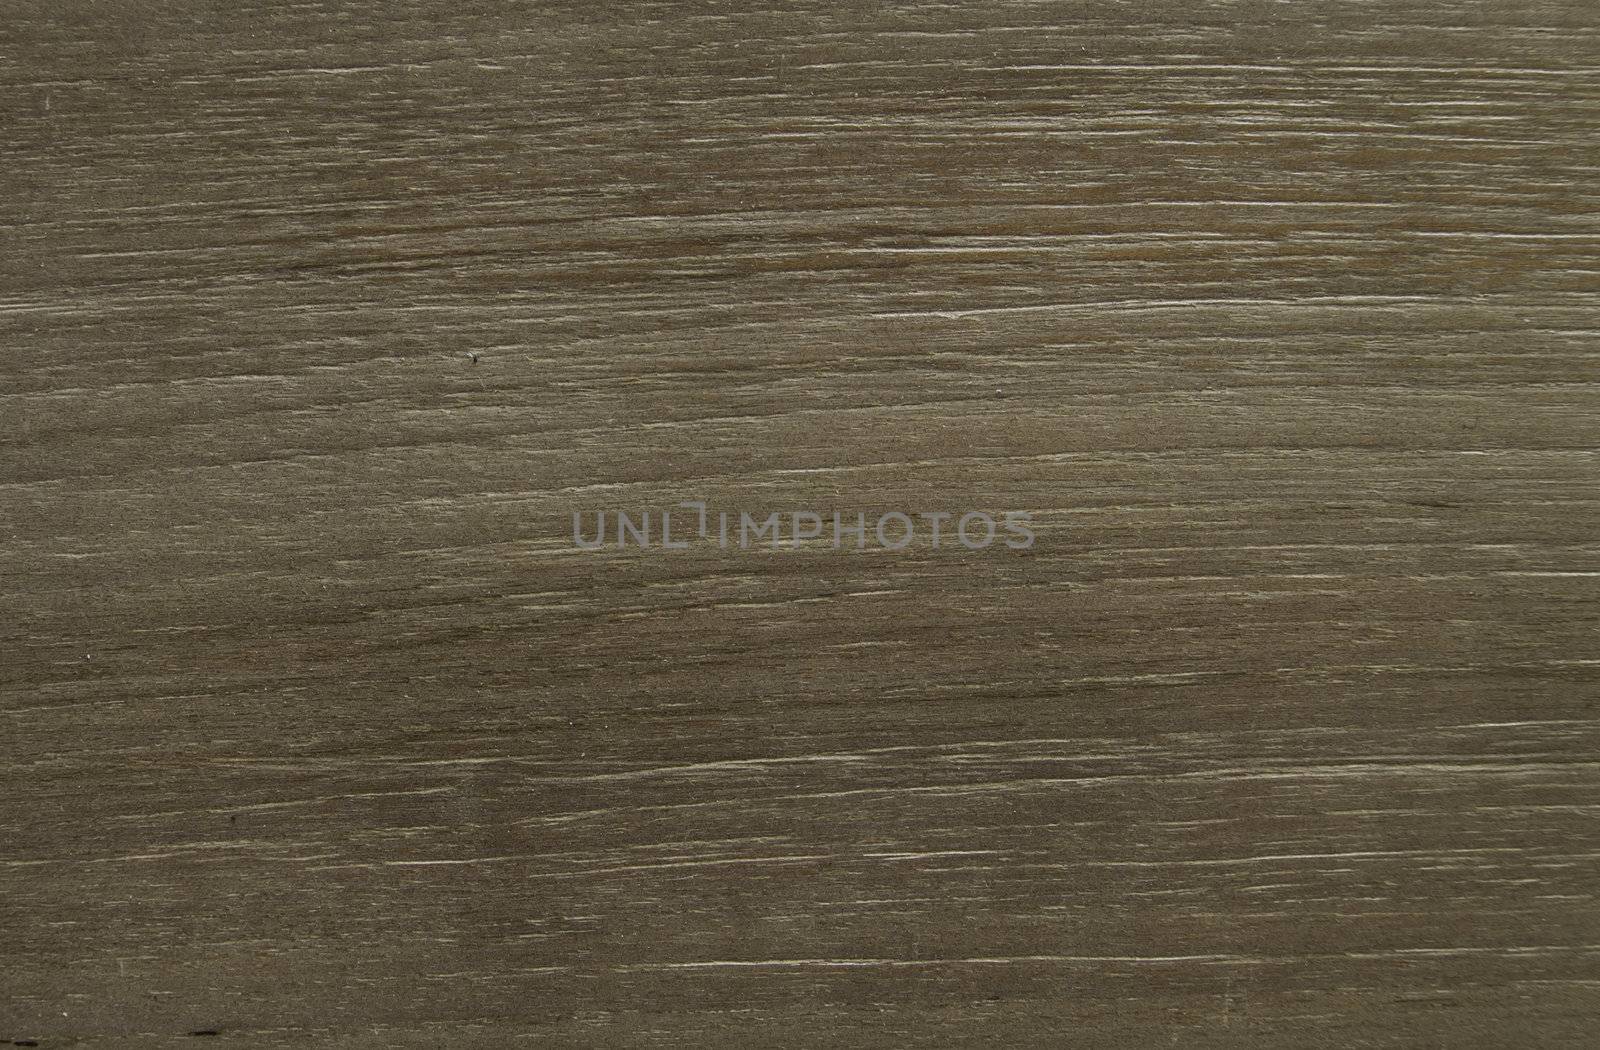 Detail of teak wood surface, engineering floor